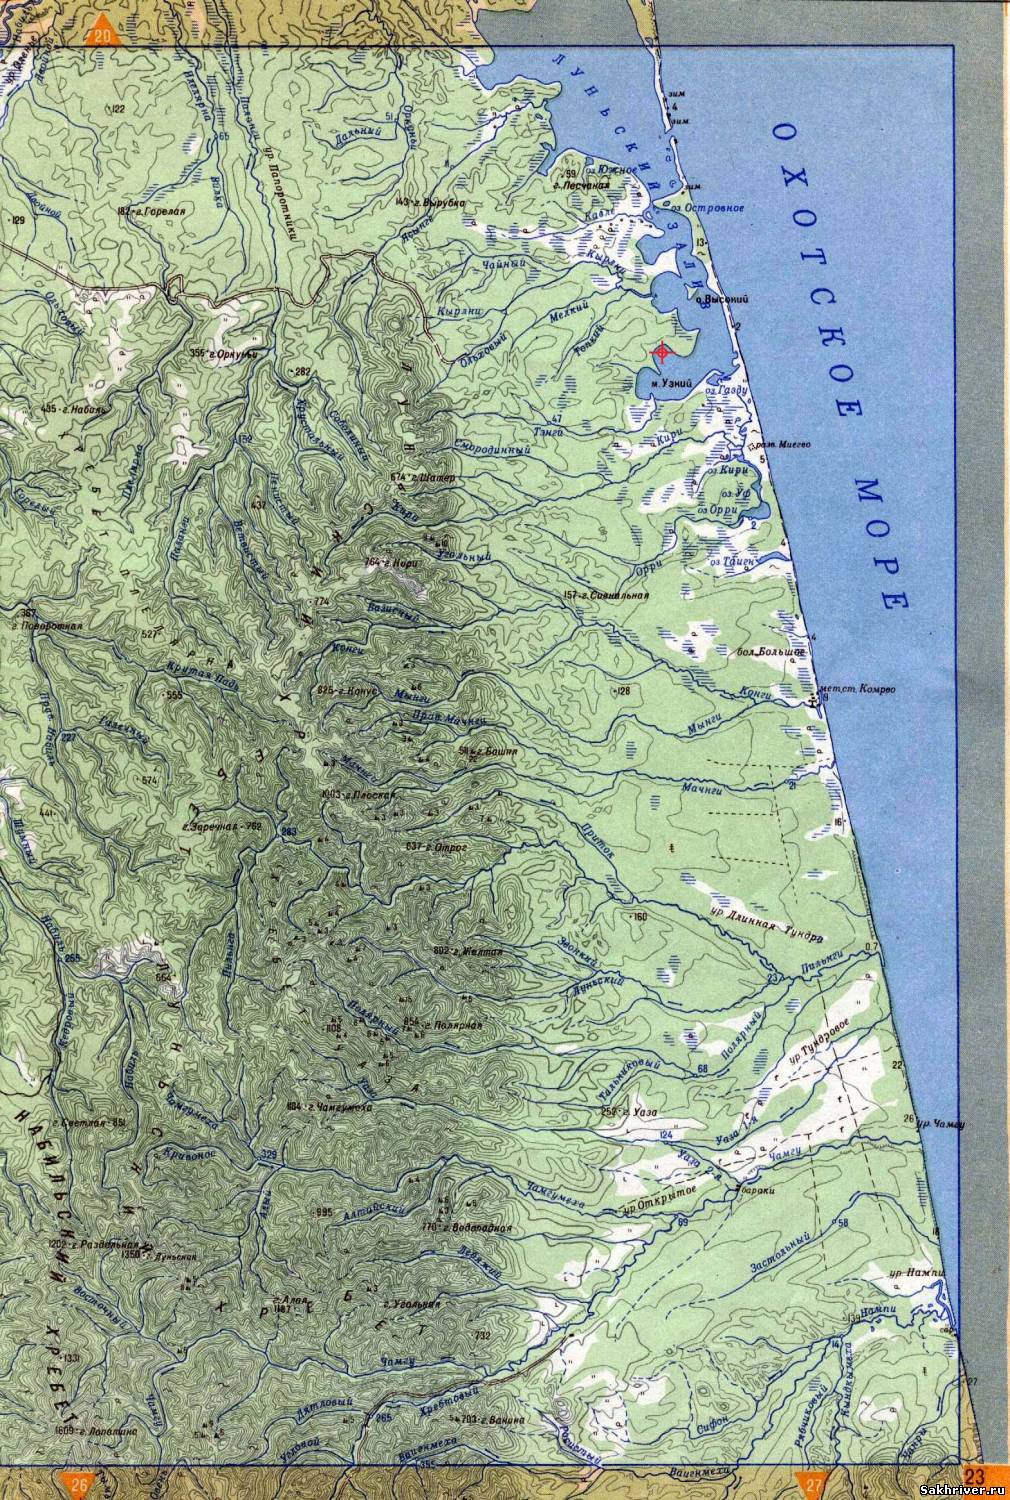 остров сахалин карта